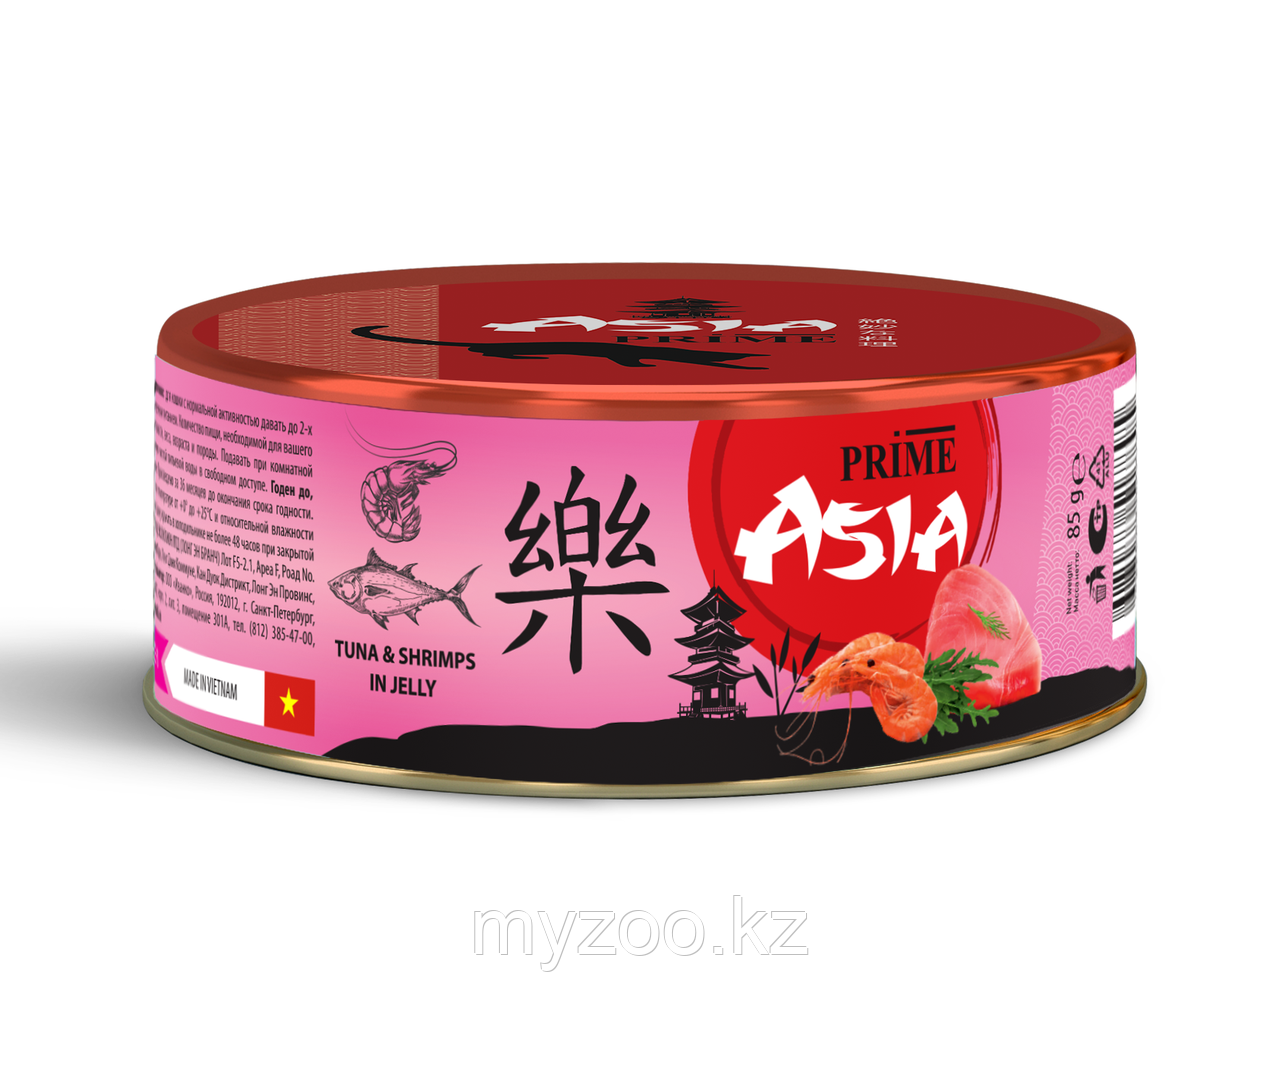 Prime Asia консервы для кошек тунец с креветками в желе, 85гр